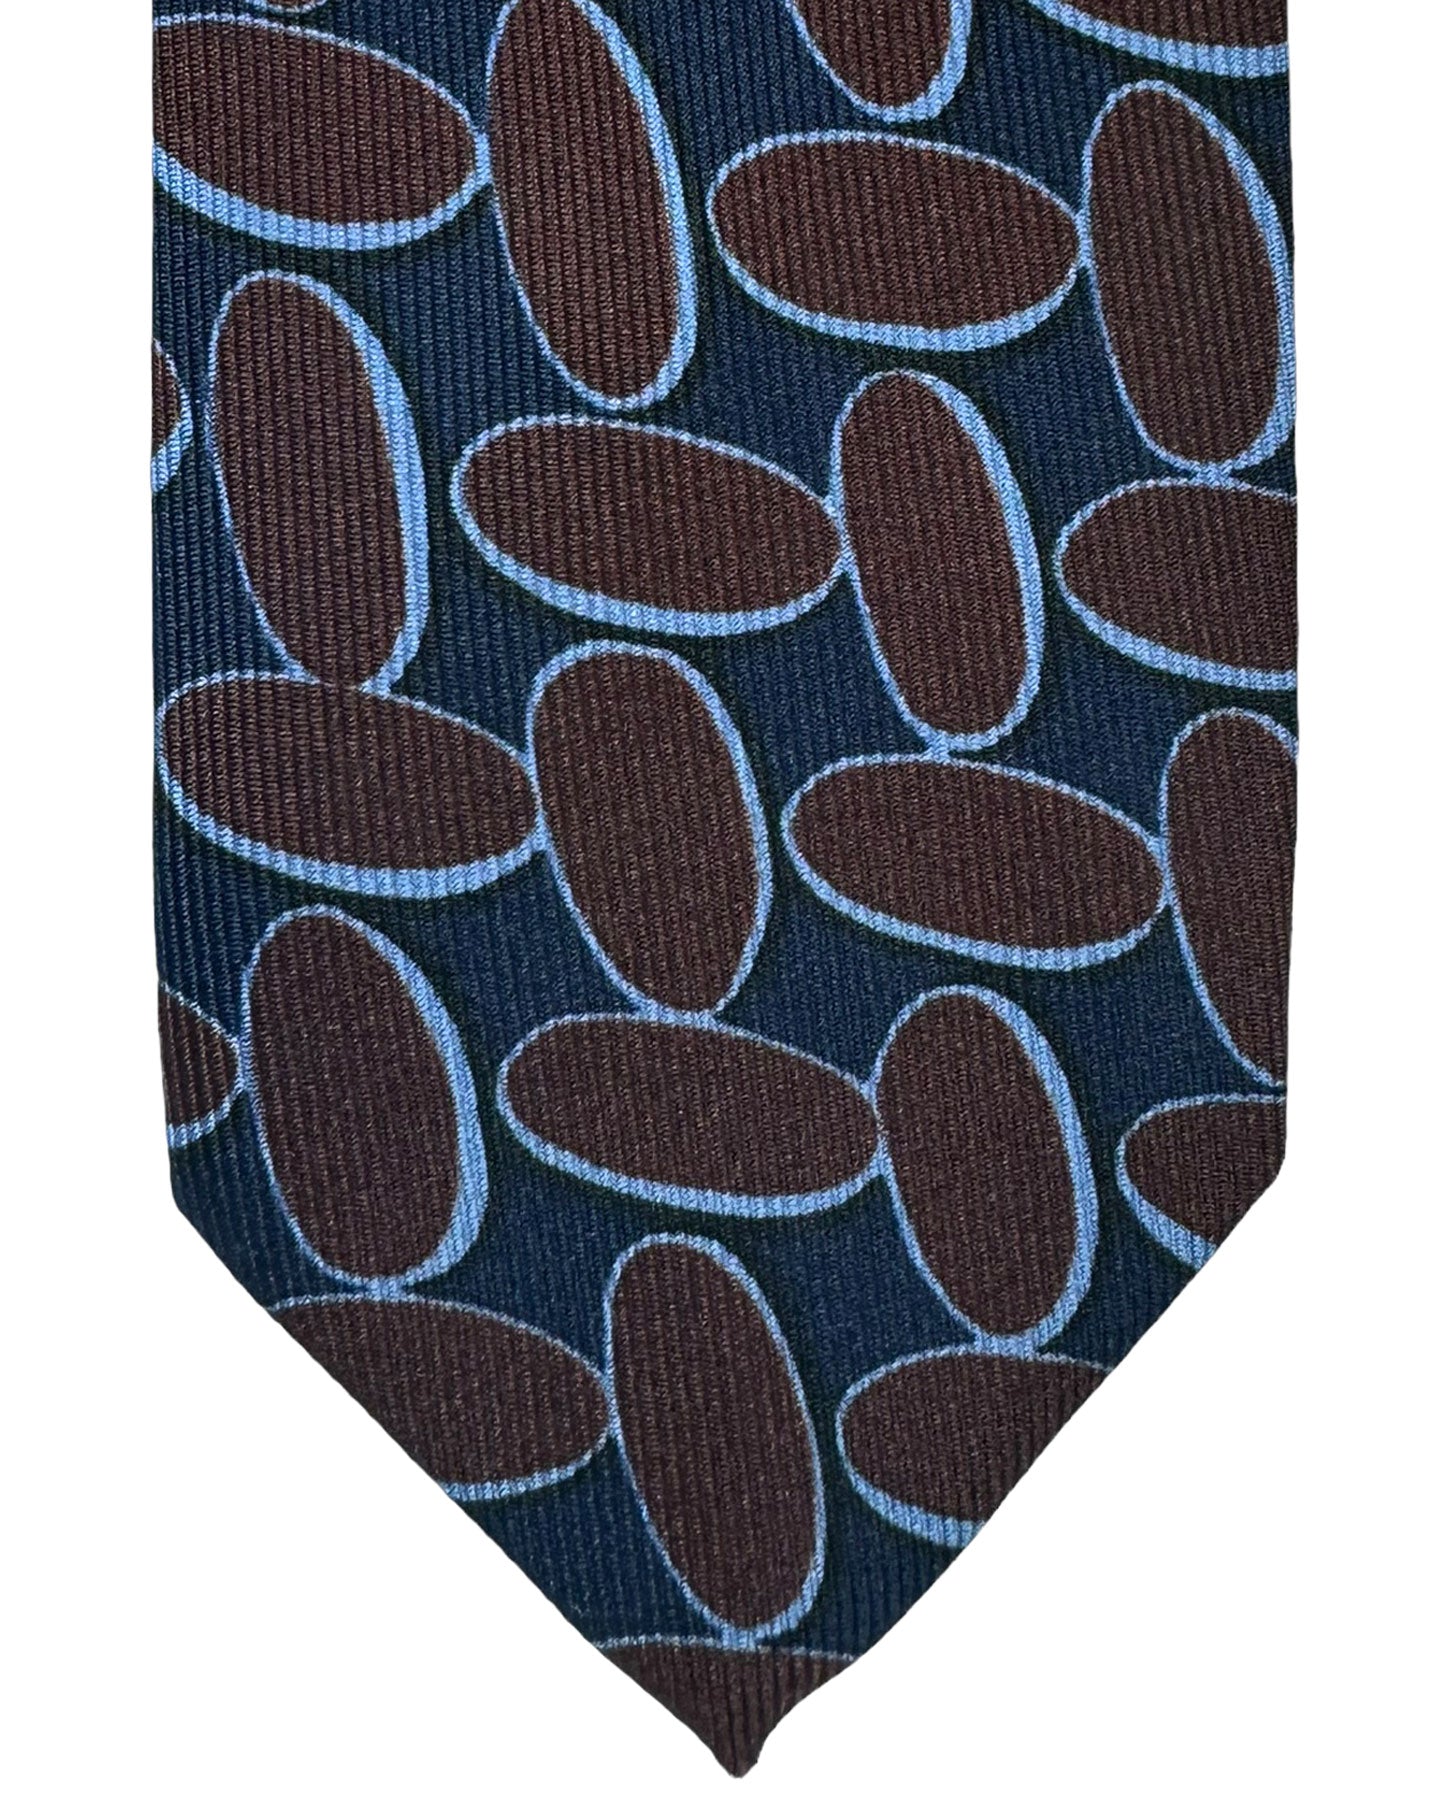 Barba Sevenfold Tie Midnight Blue Brown Ovals Design - Sartorial Neckwear 